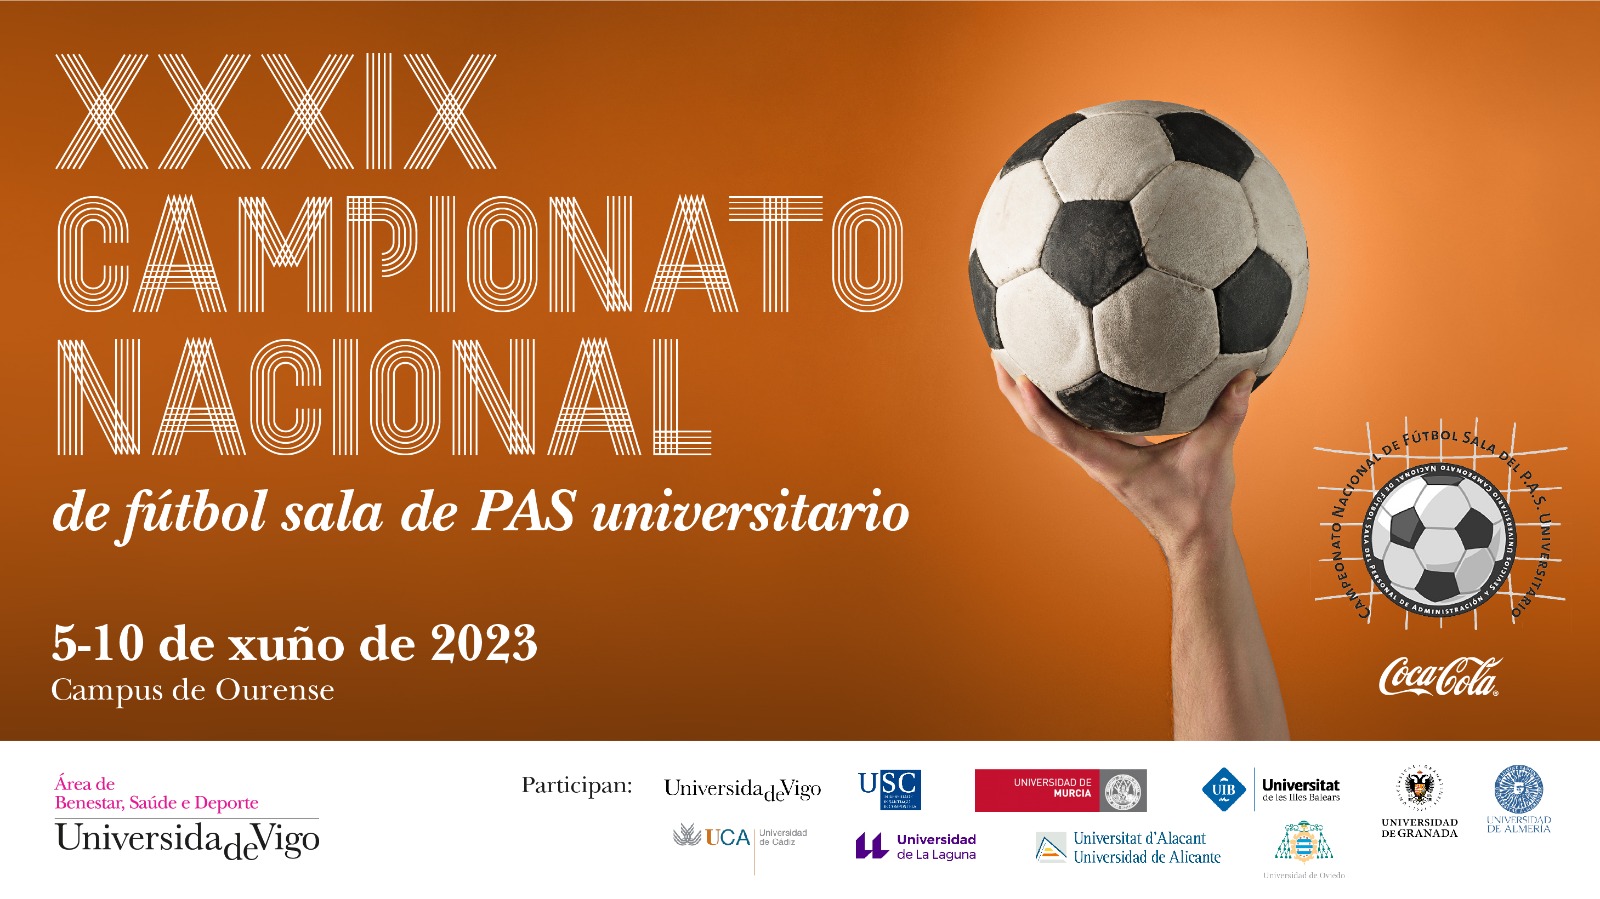 XXXIX Campionato nacional de fútbol sala de PAS